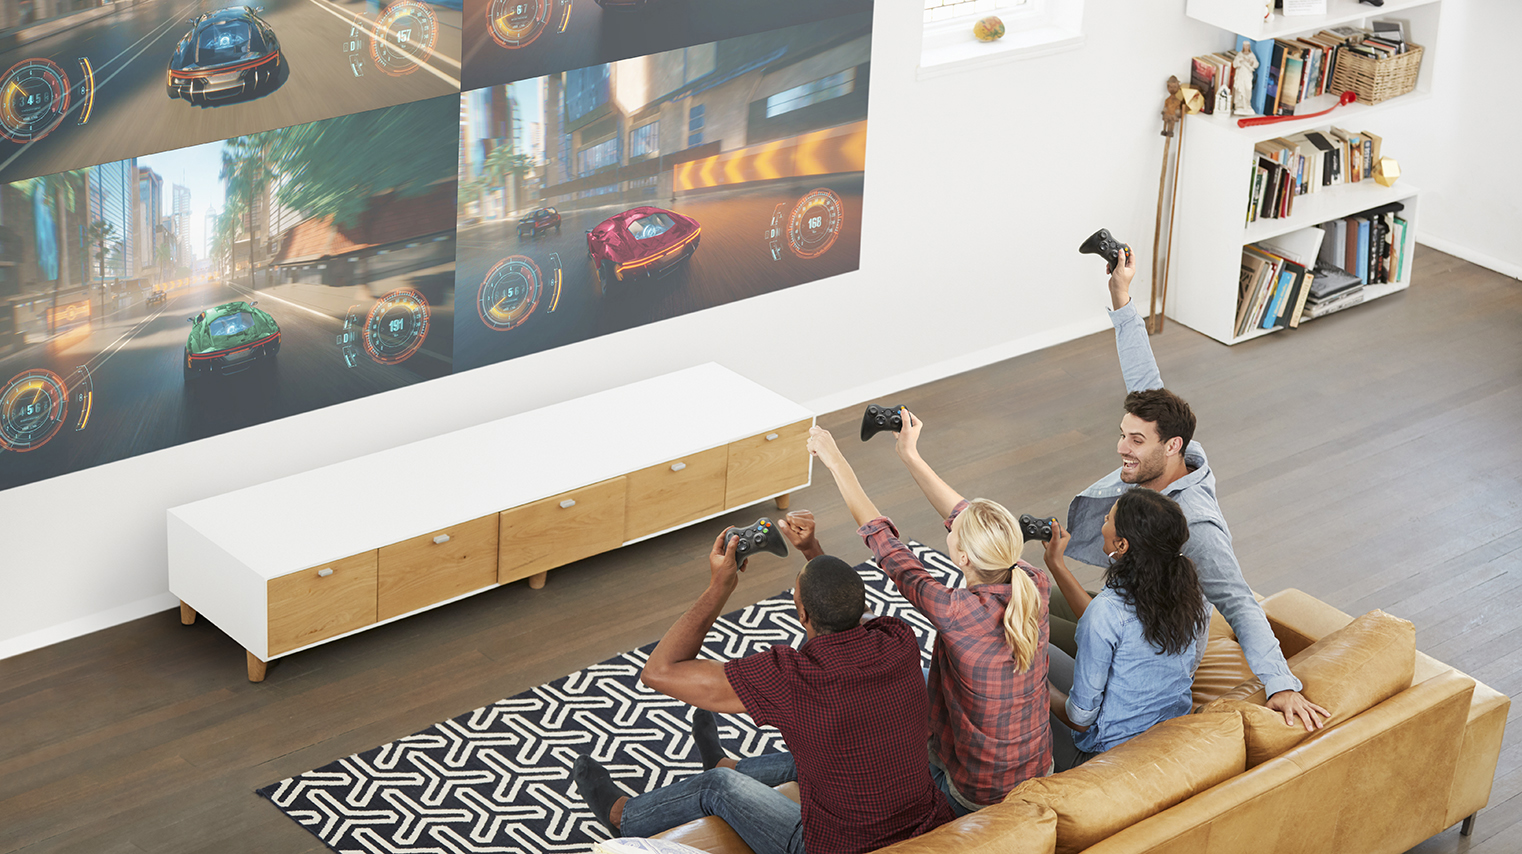 Epson przedstawia sześć nowych projektorów do kina domowego, gier i oglądania sportu